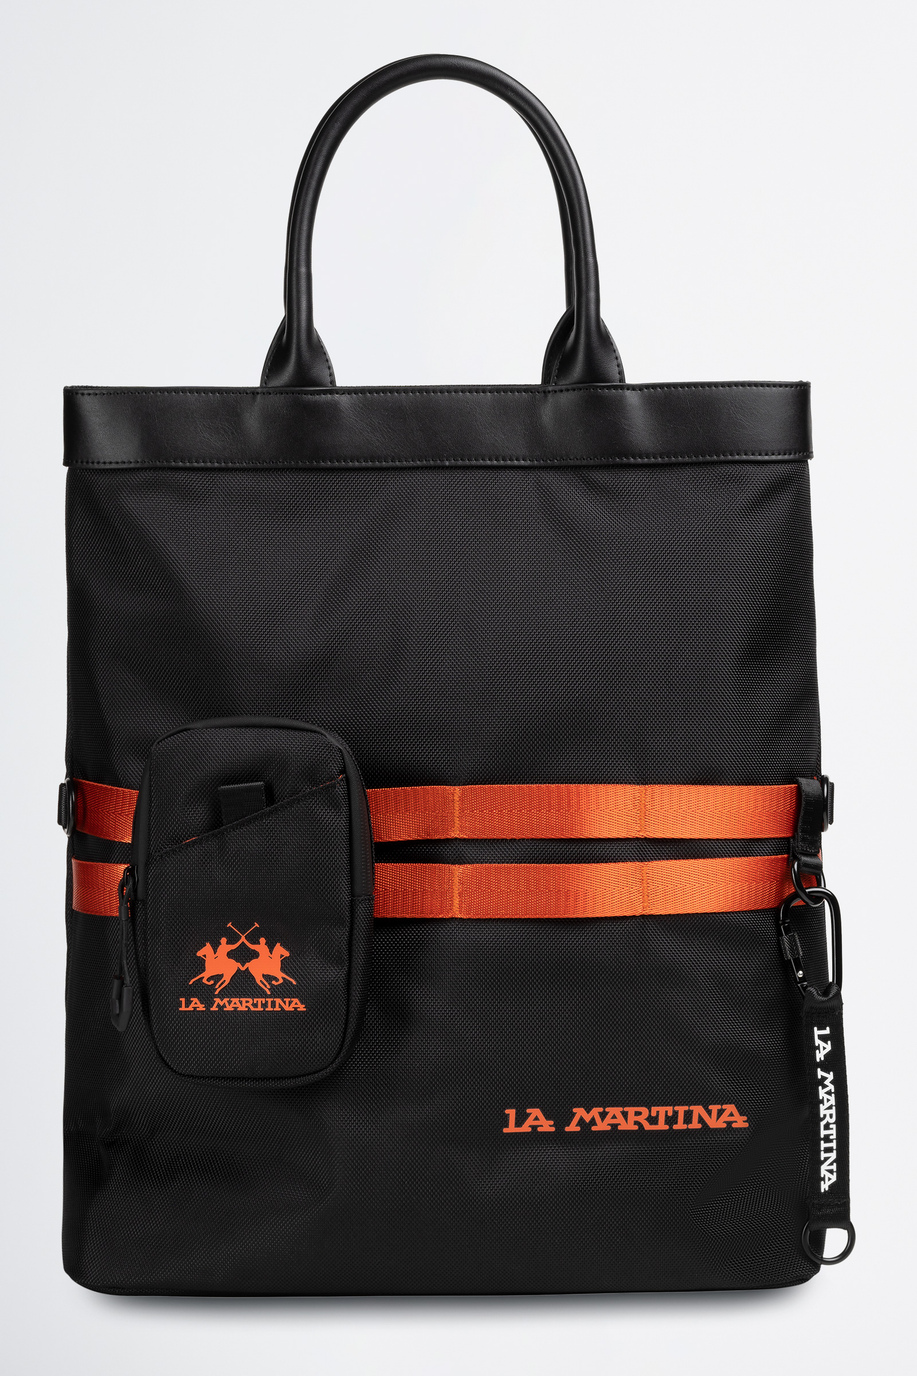 Herren Tasche aus synthetischem Gewebe - Taschen | La Martina - Official Online Shop